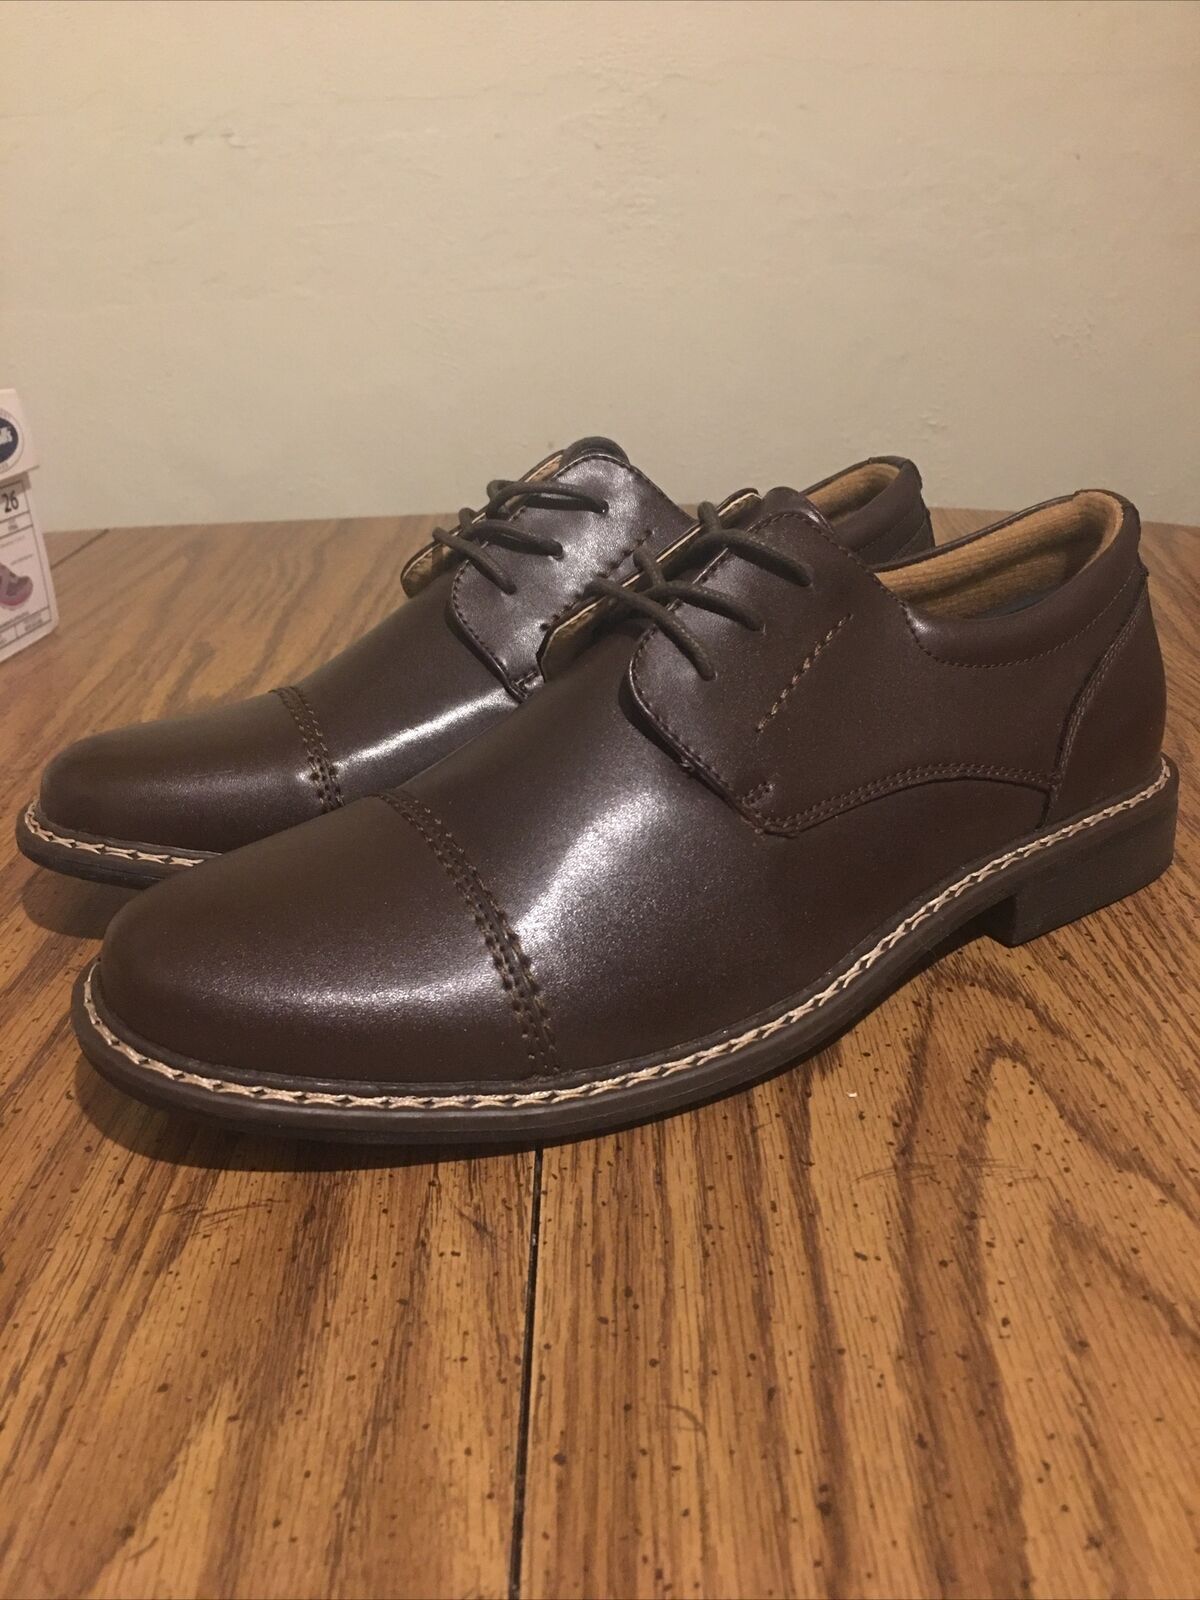 Dr. Scholls Dress Shoes, Men’s Sz 8, Brown,Leather,Cap Toe, Lace Up